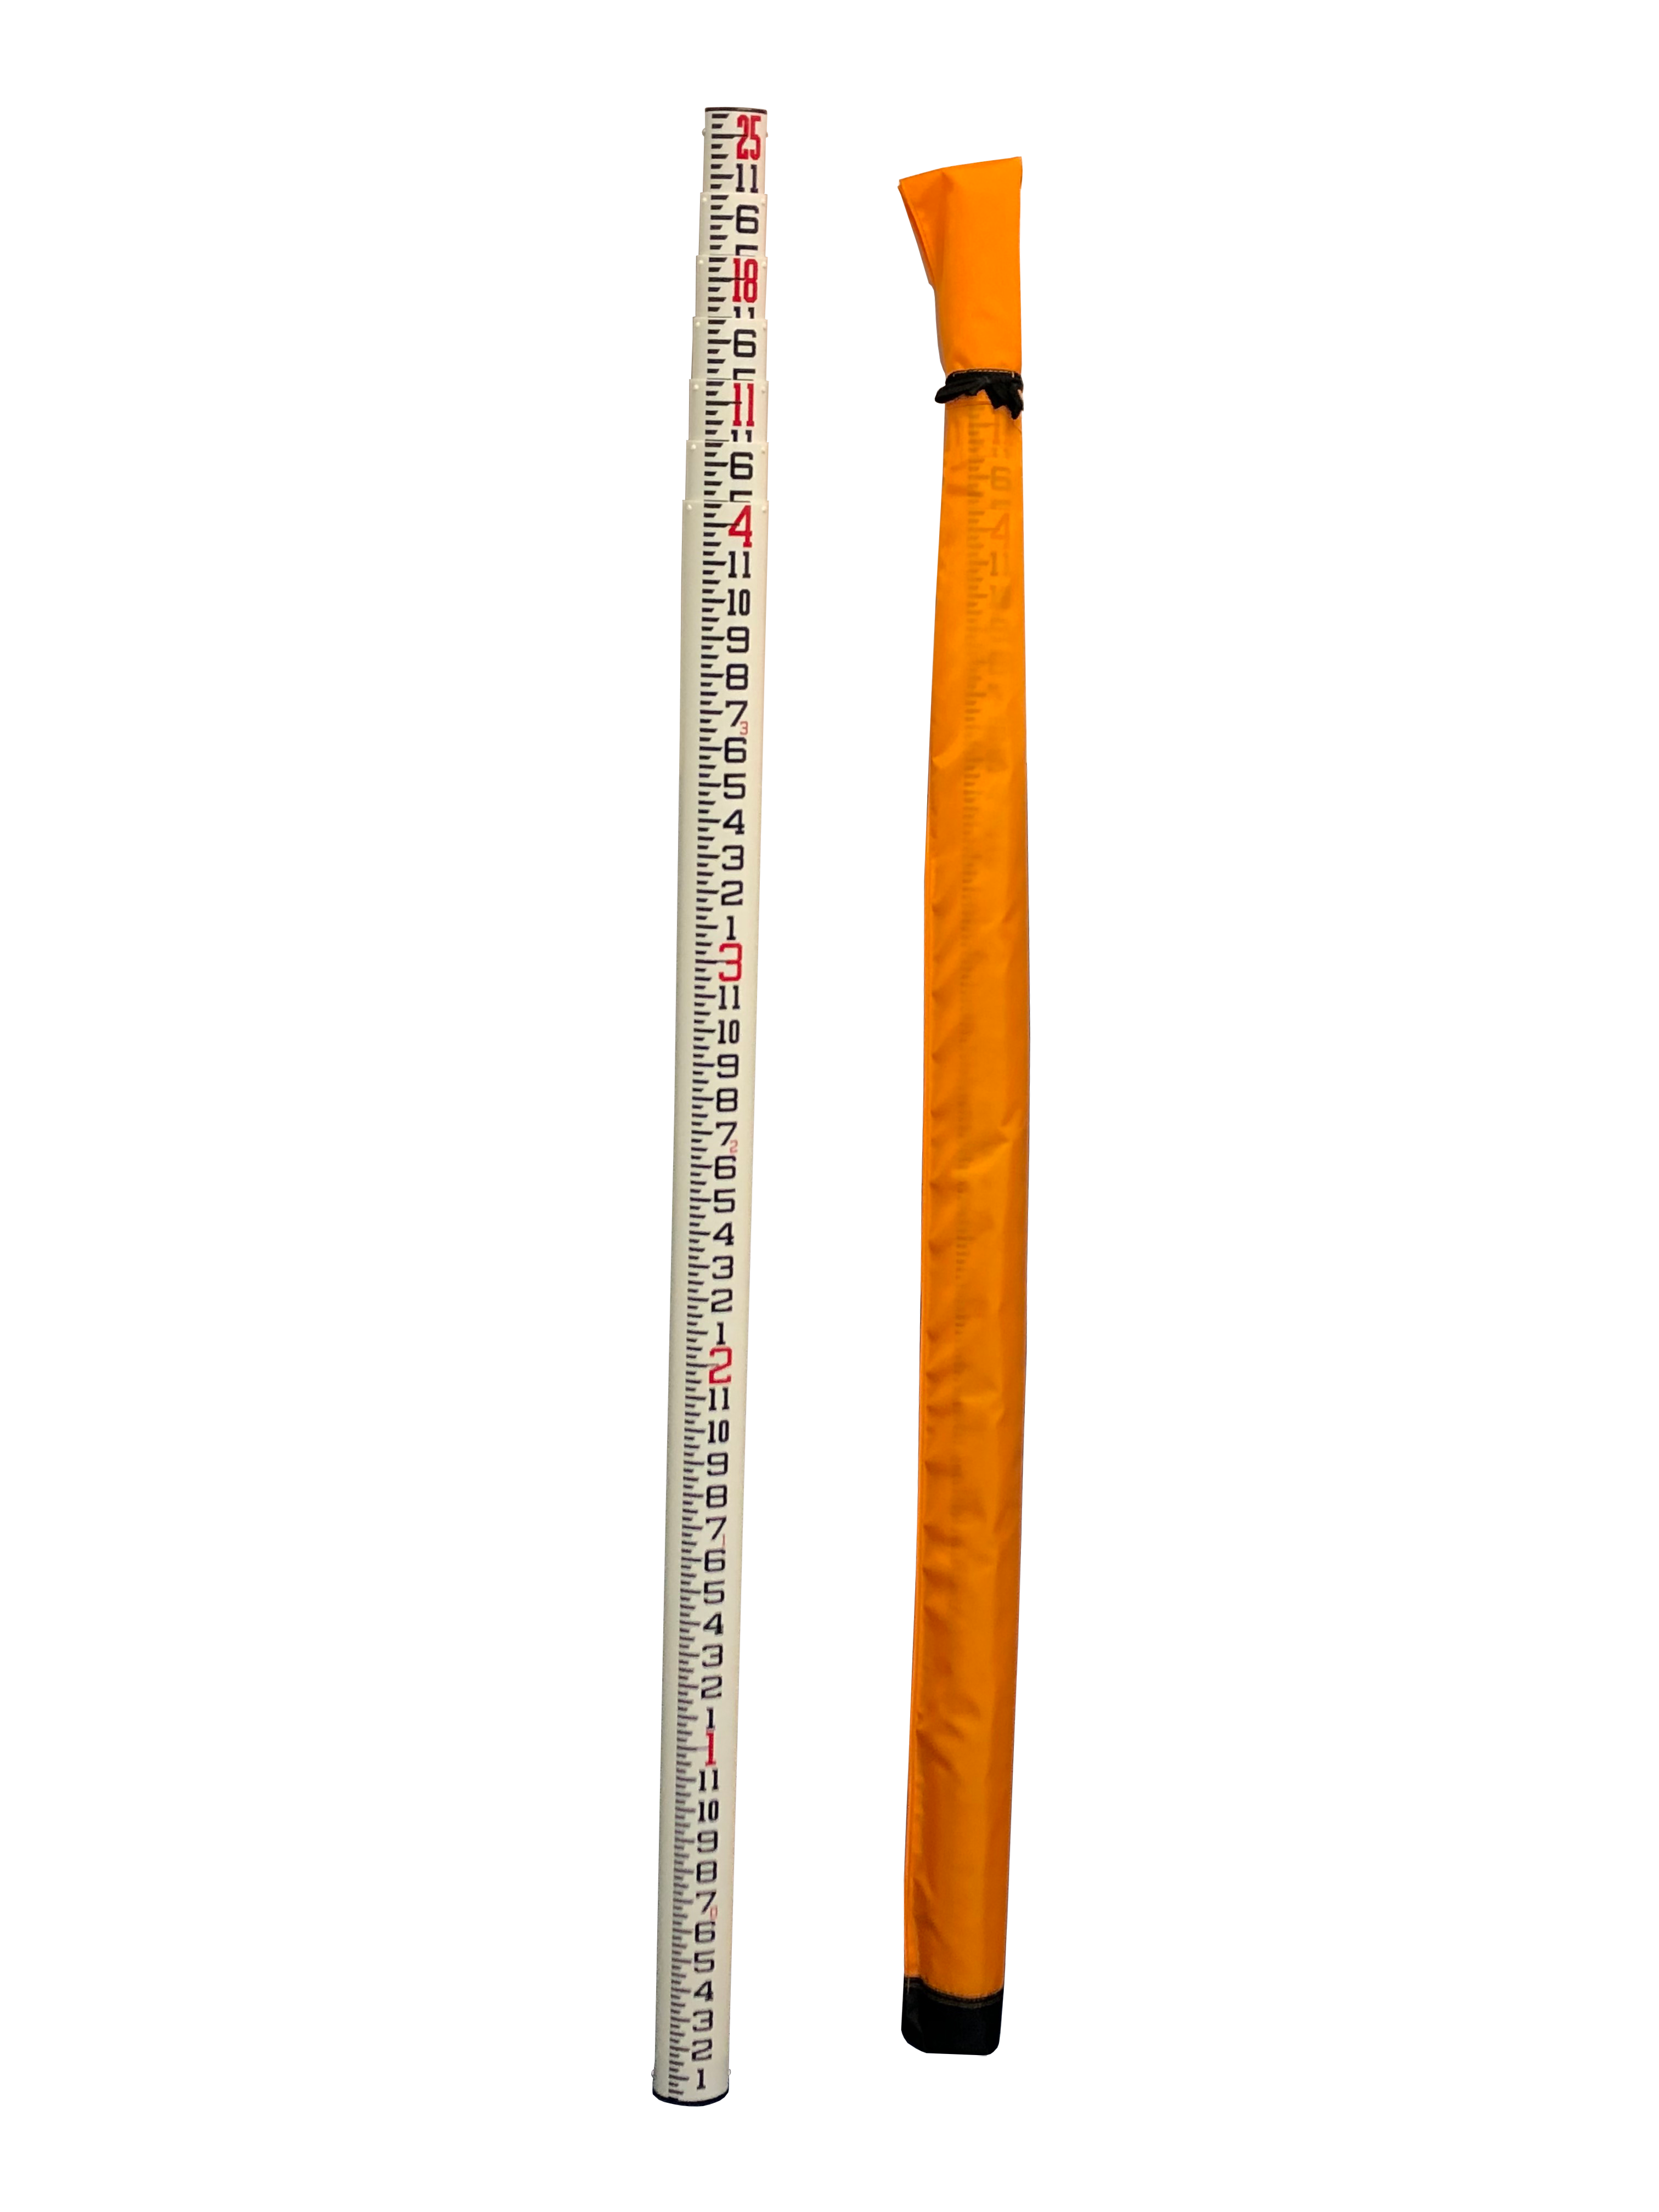 Sokkia 807338 25' Oval Fiberglass Grade Rod in Inches w/Case